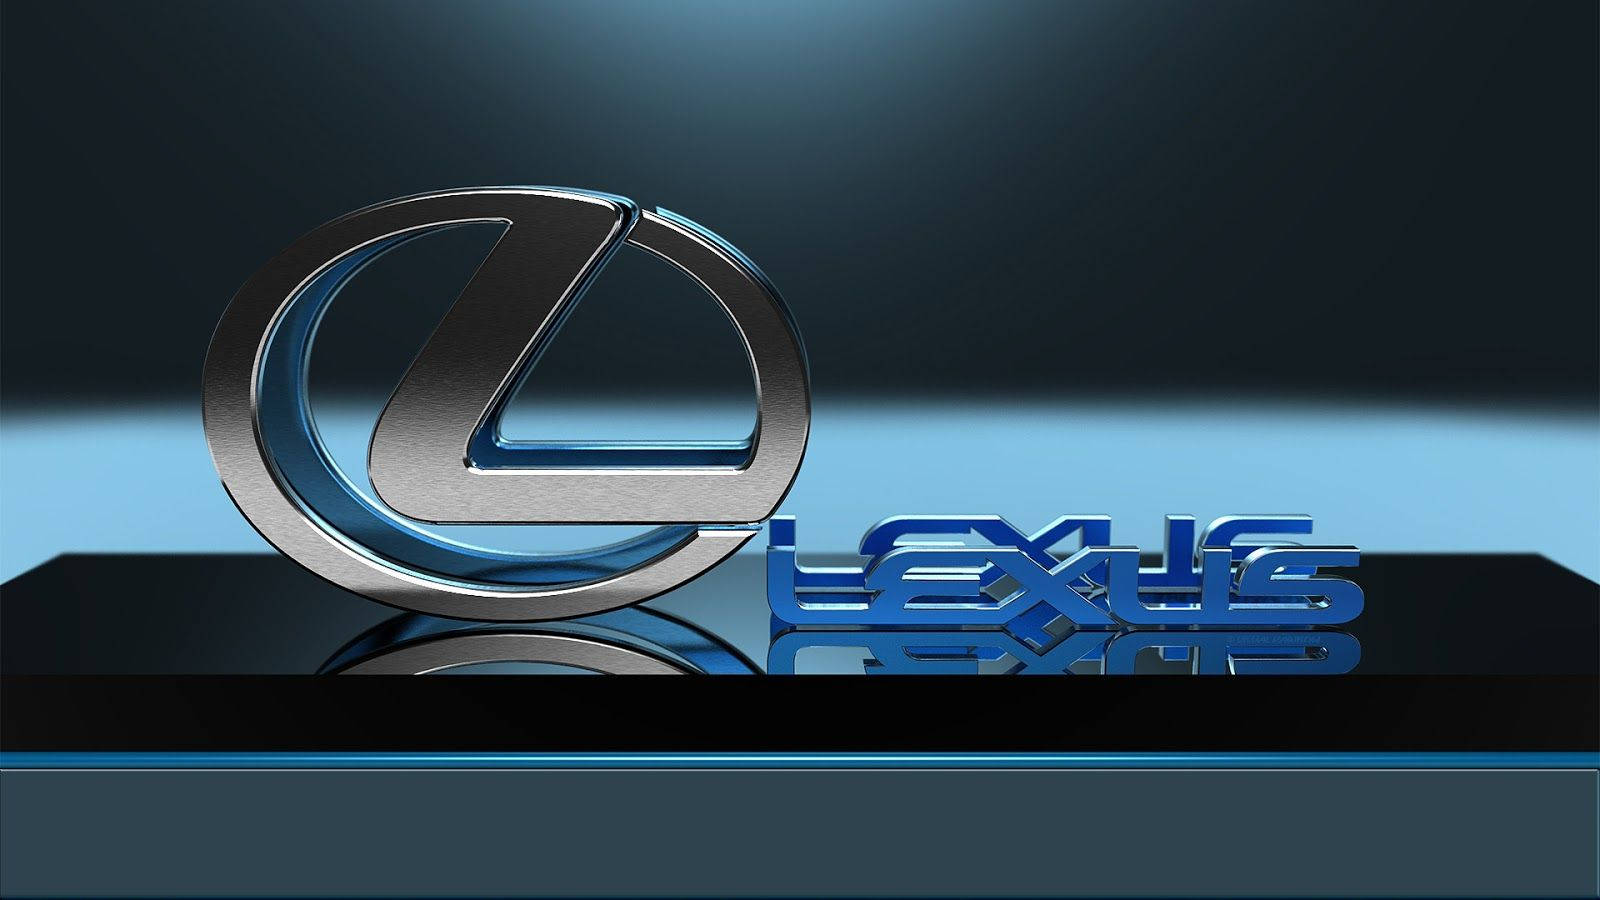 Coolesilberne Lexus-logo Wallpaper